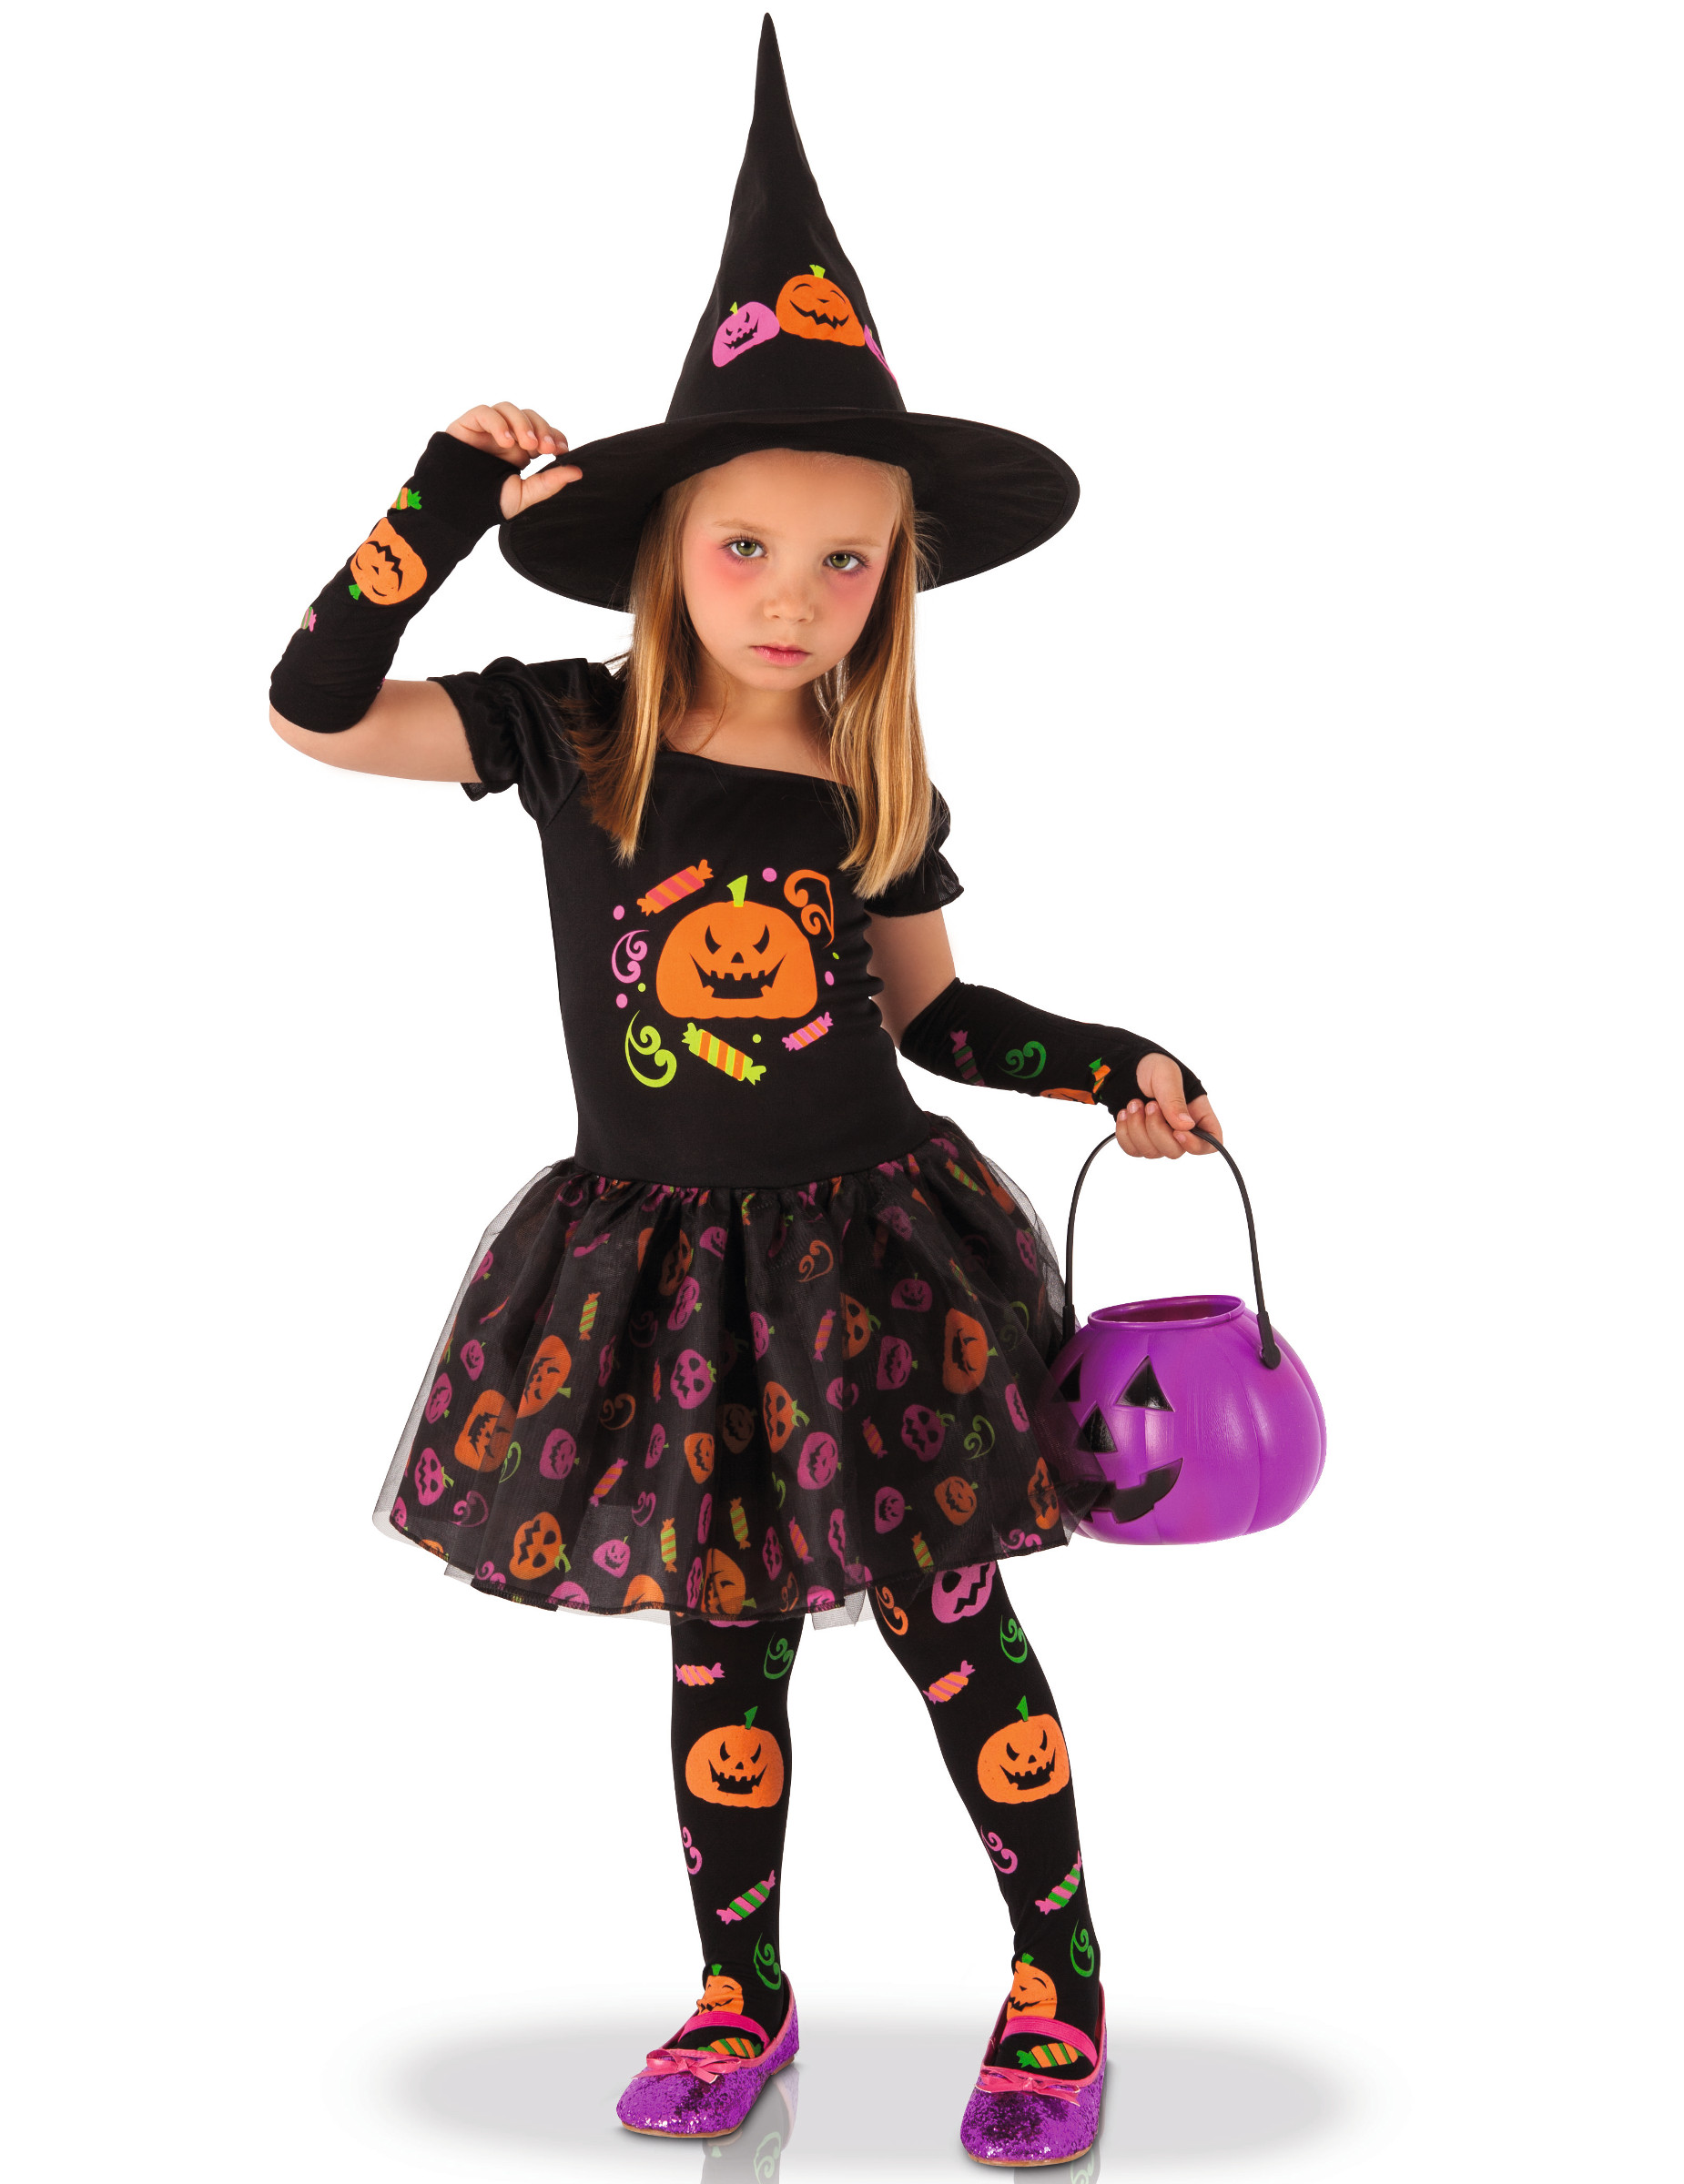 Deguisement d'Halloween facile pour enfant - Mon blog - Modaliza